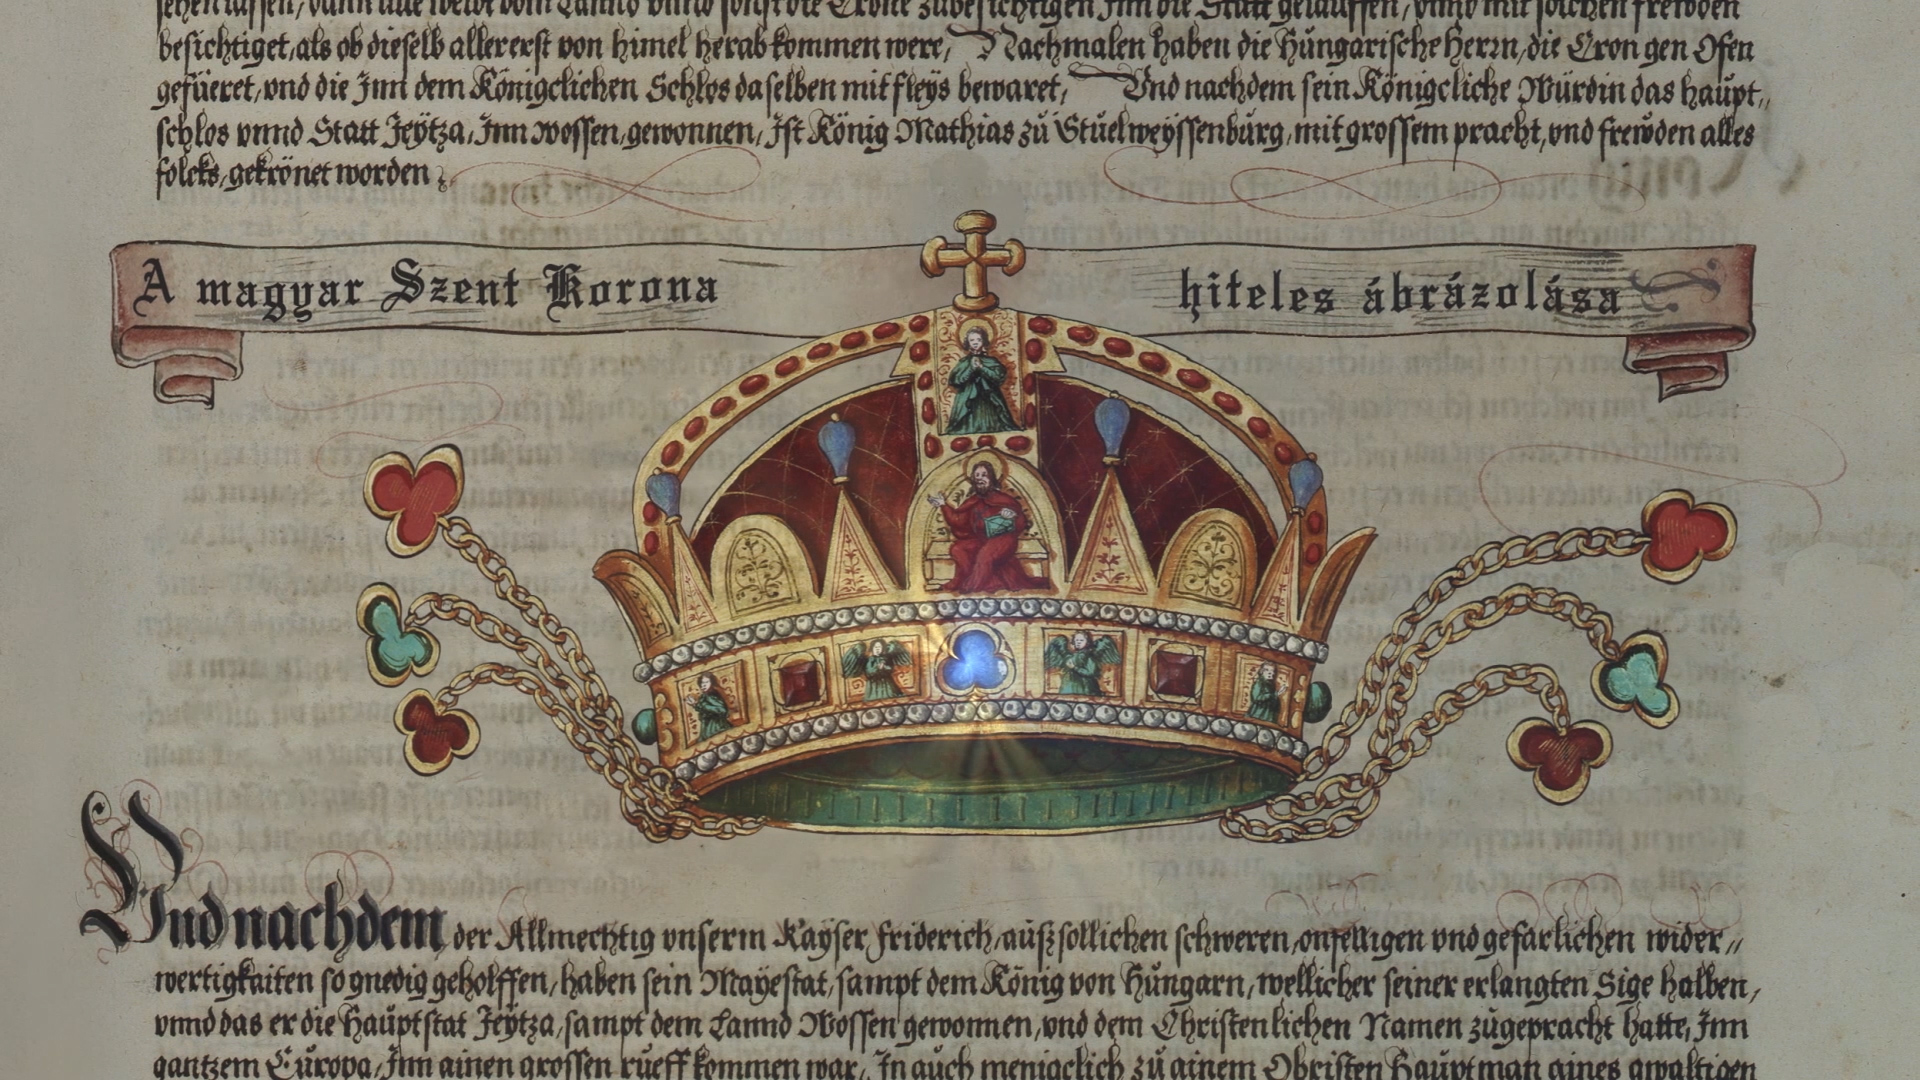 A Szent korona legkorábbi ismert ábrázolása. Forrás: A Szent Korona és koronázási kincseink nyomában, FilmLab